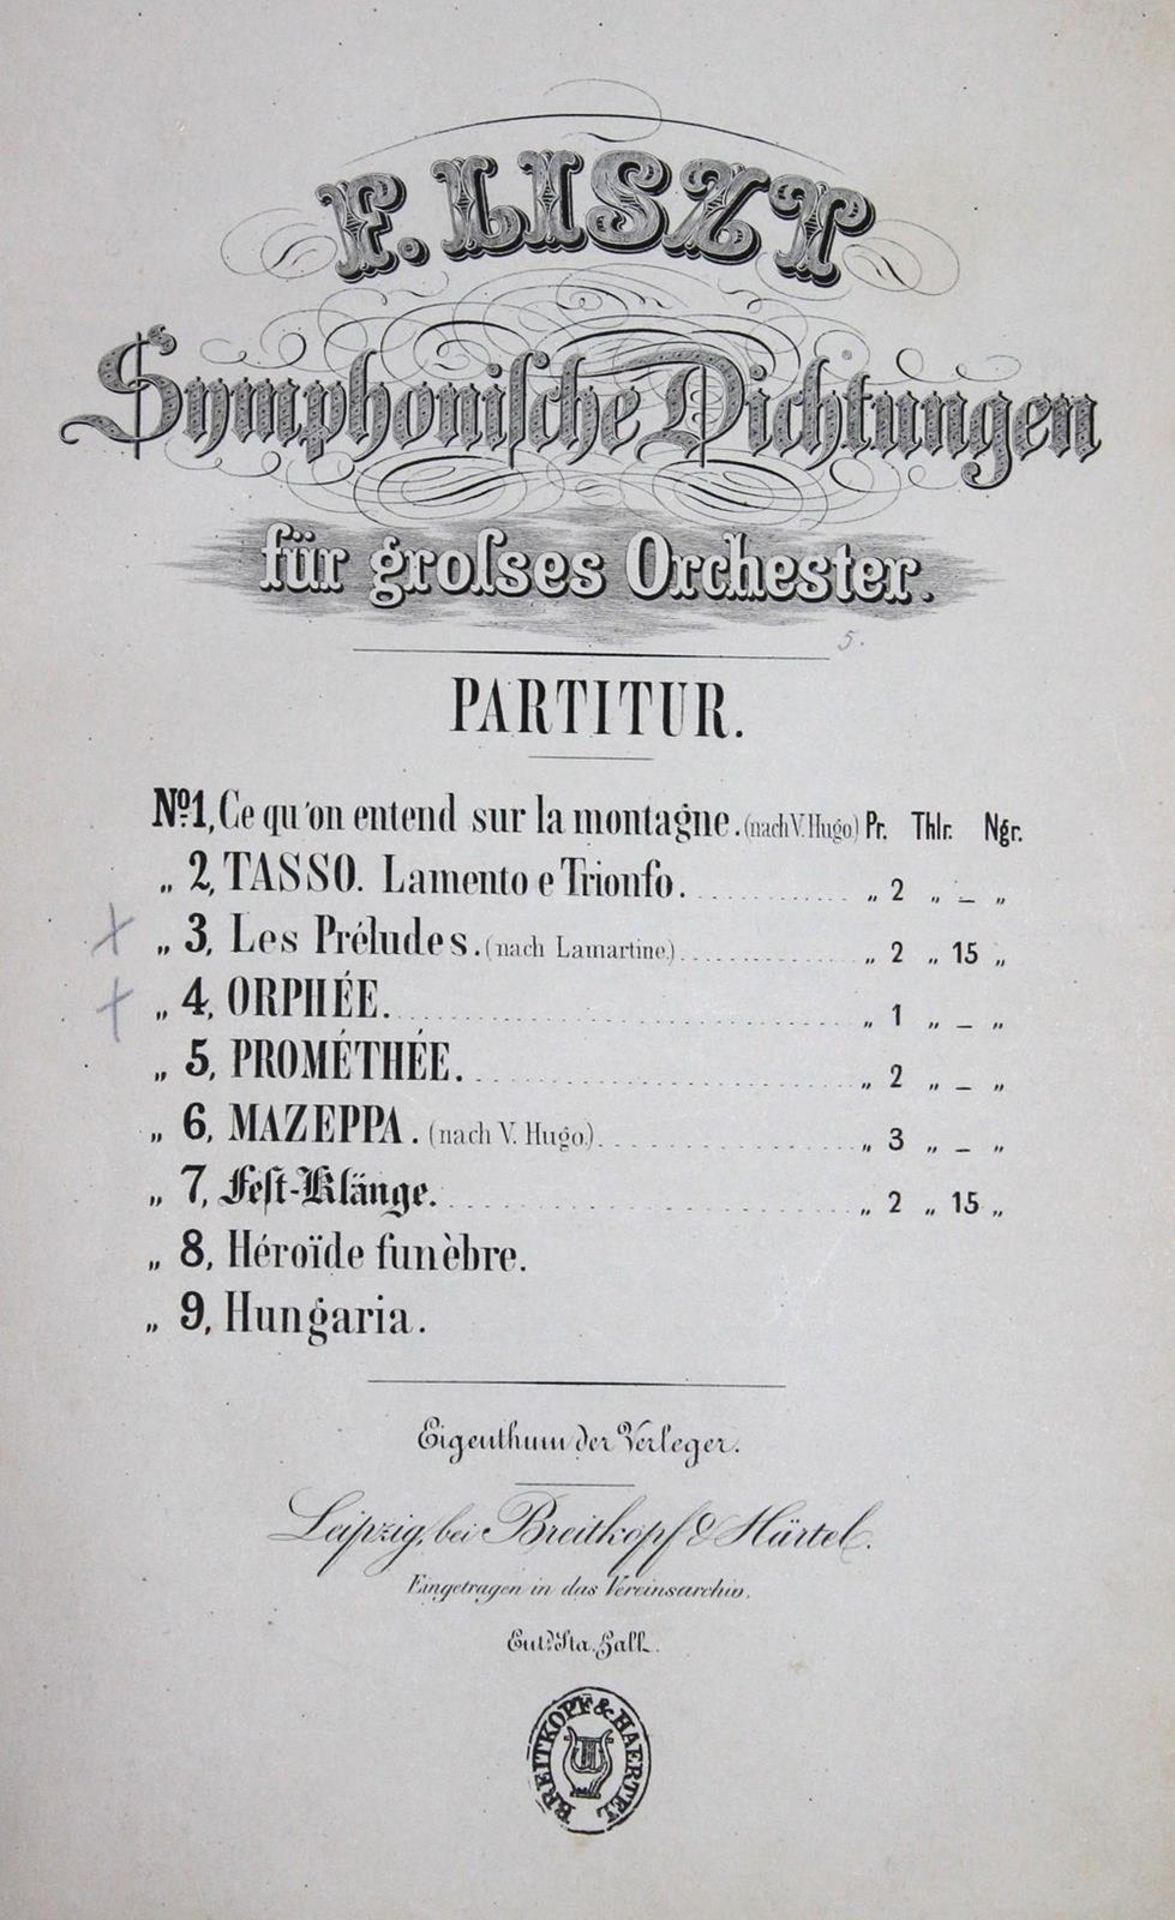 Liszt,F.Symphonische Dichtungen für grosses Orchester. Partitur. No. 3: Les Preludes (nach Lama